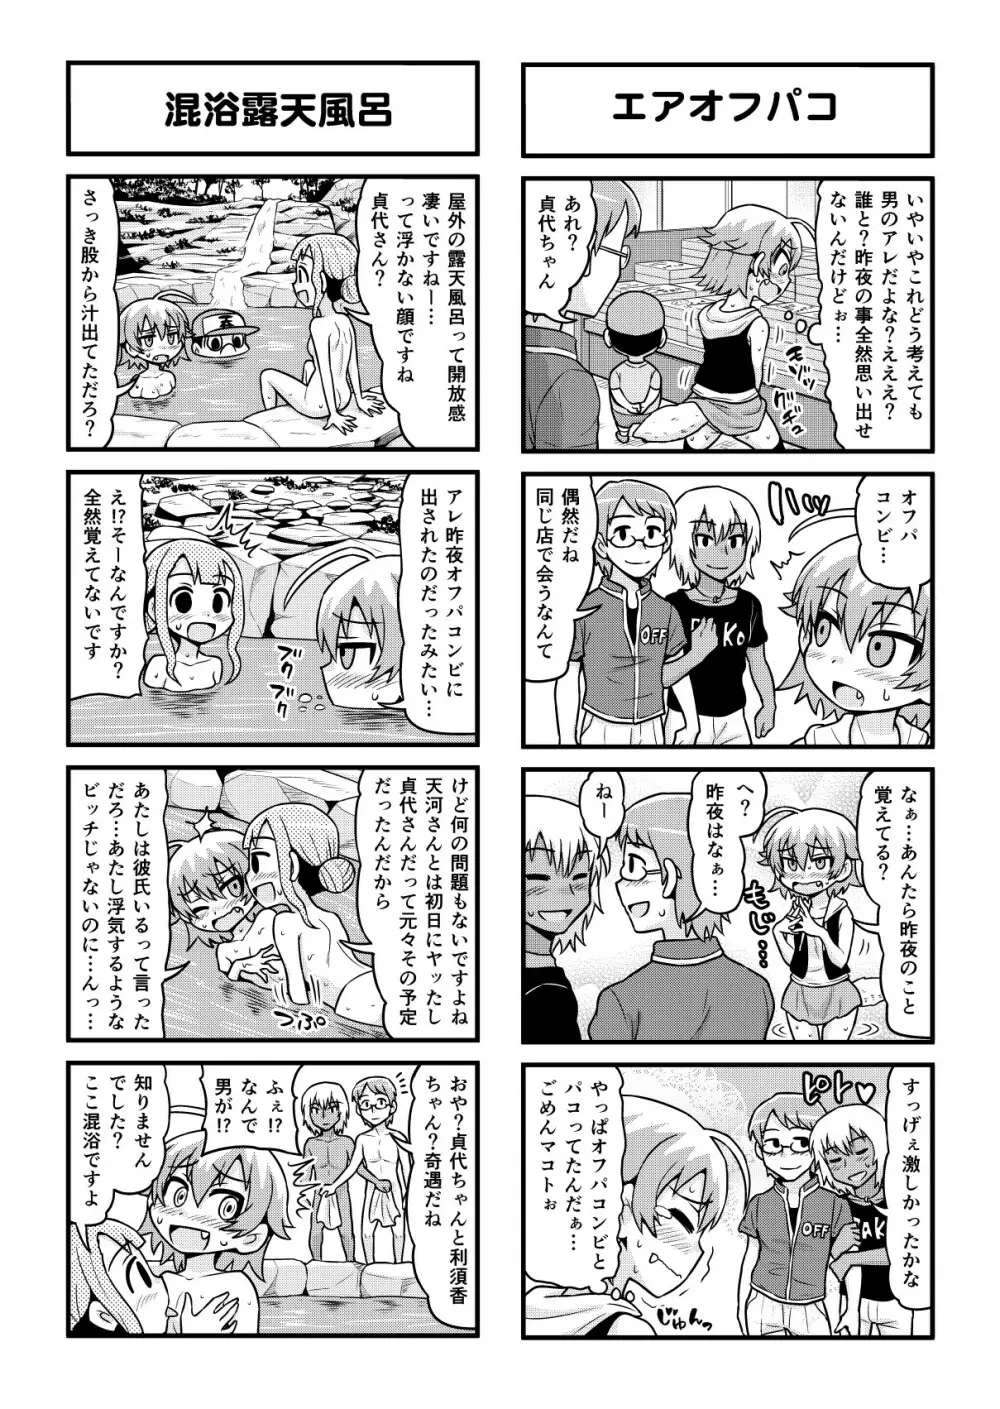 のんきBOY 1-52 - page322